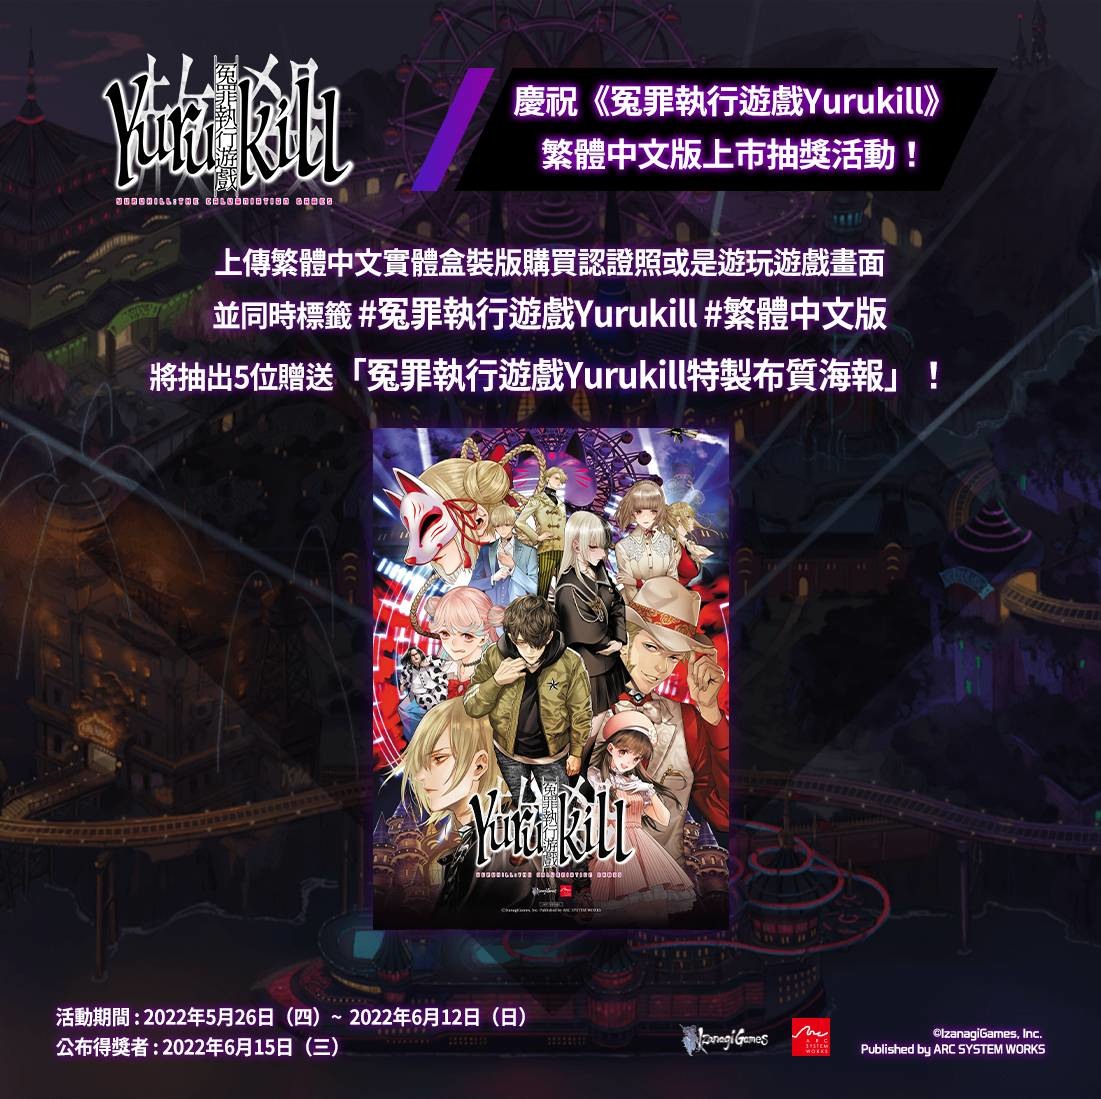 冤罪執行遊戲Yurukill》繁體中文版今日正式推出將同步舉辦慶祝上市活動《Yurukill: The Calumniation Games》 -  巴哈姆特